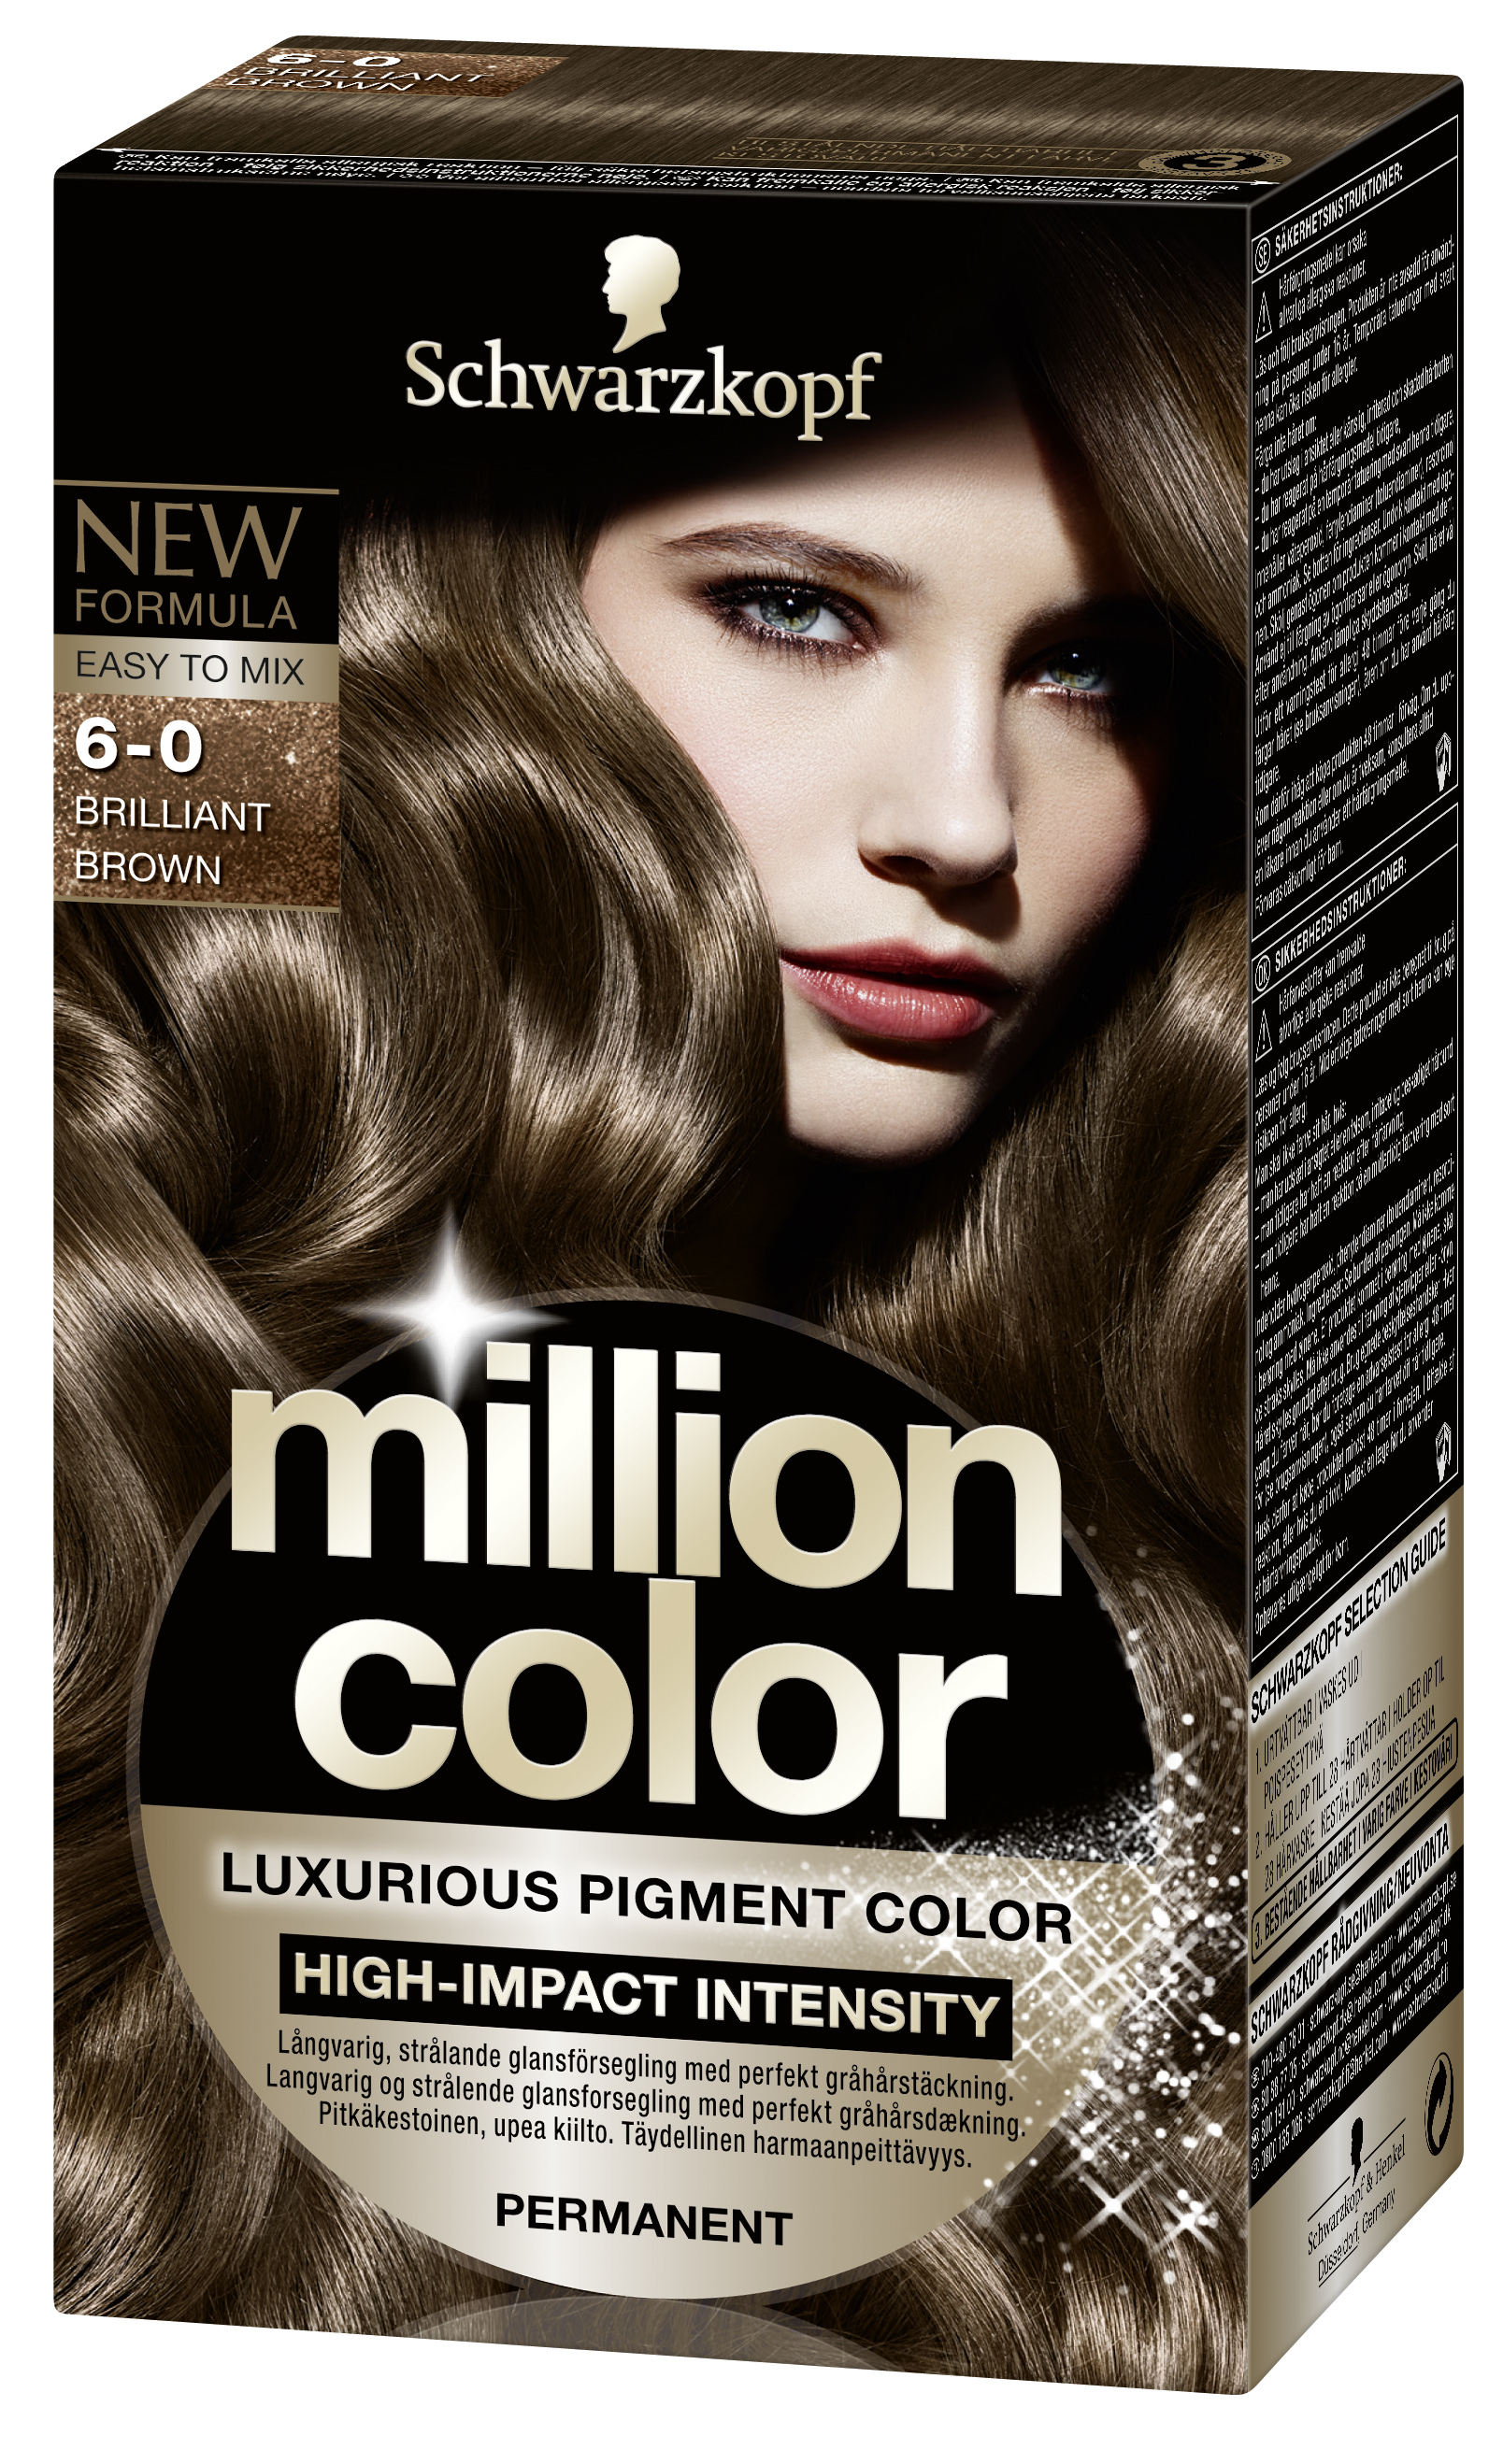 Темные тона красок для волос. Schwarzkopf million Color 6-0. Краска шварцкопф темный каштан. Краска для волос шварцкопф 6.0. Краска для волос шварцкопф холодный каштановый.